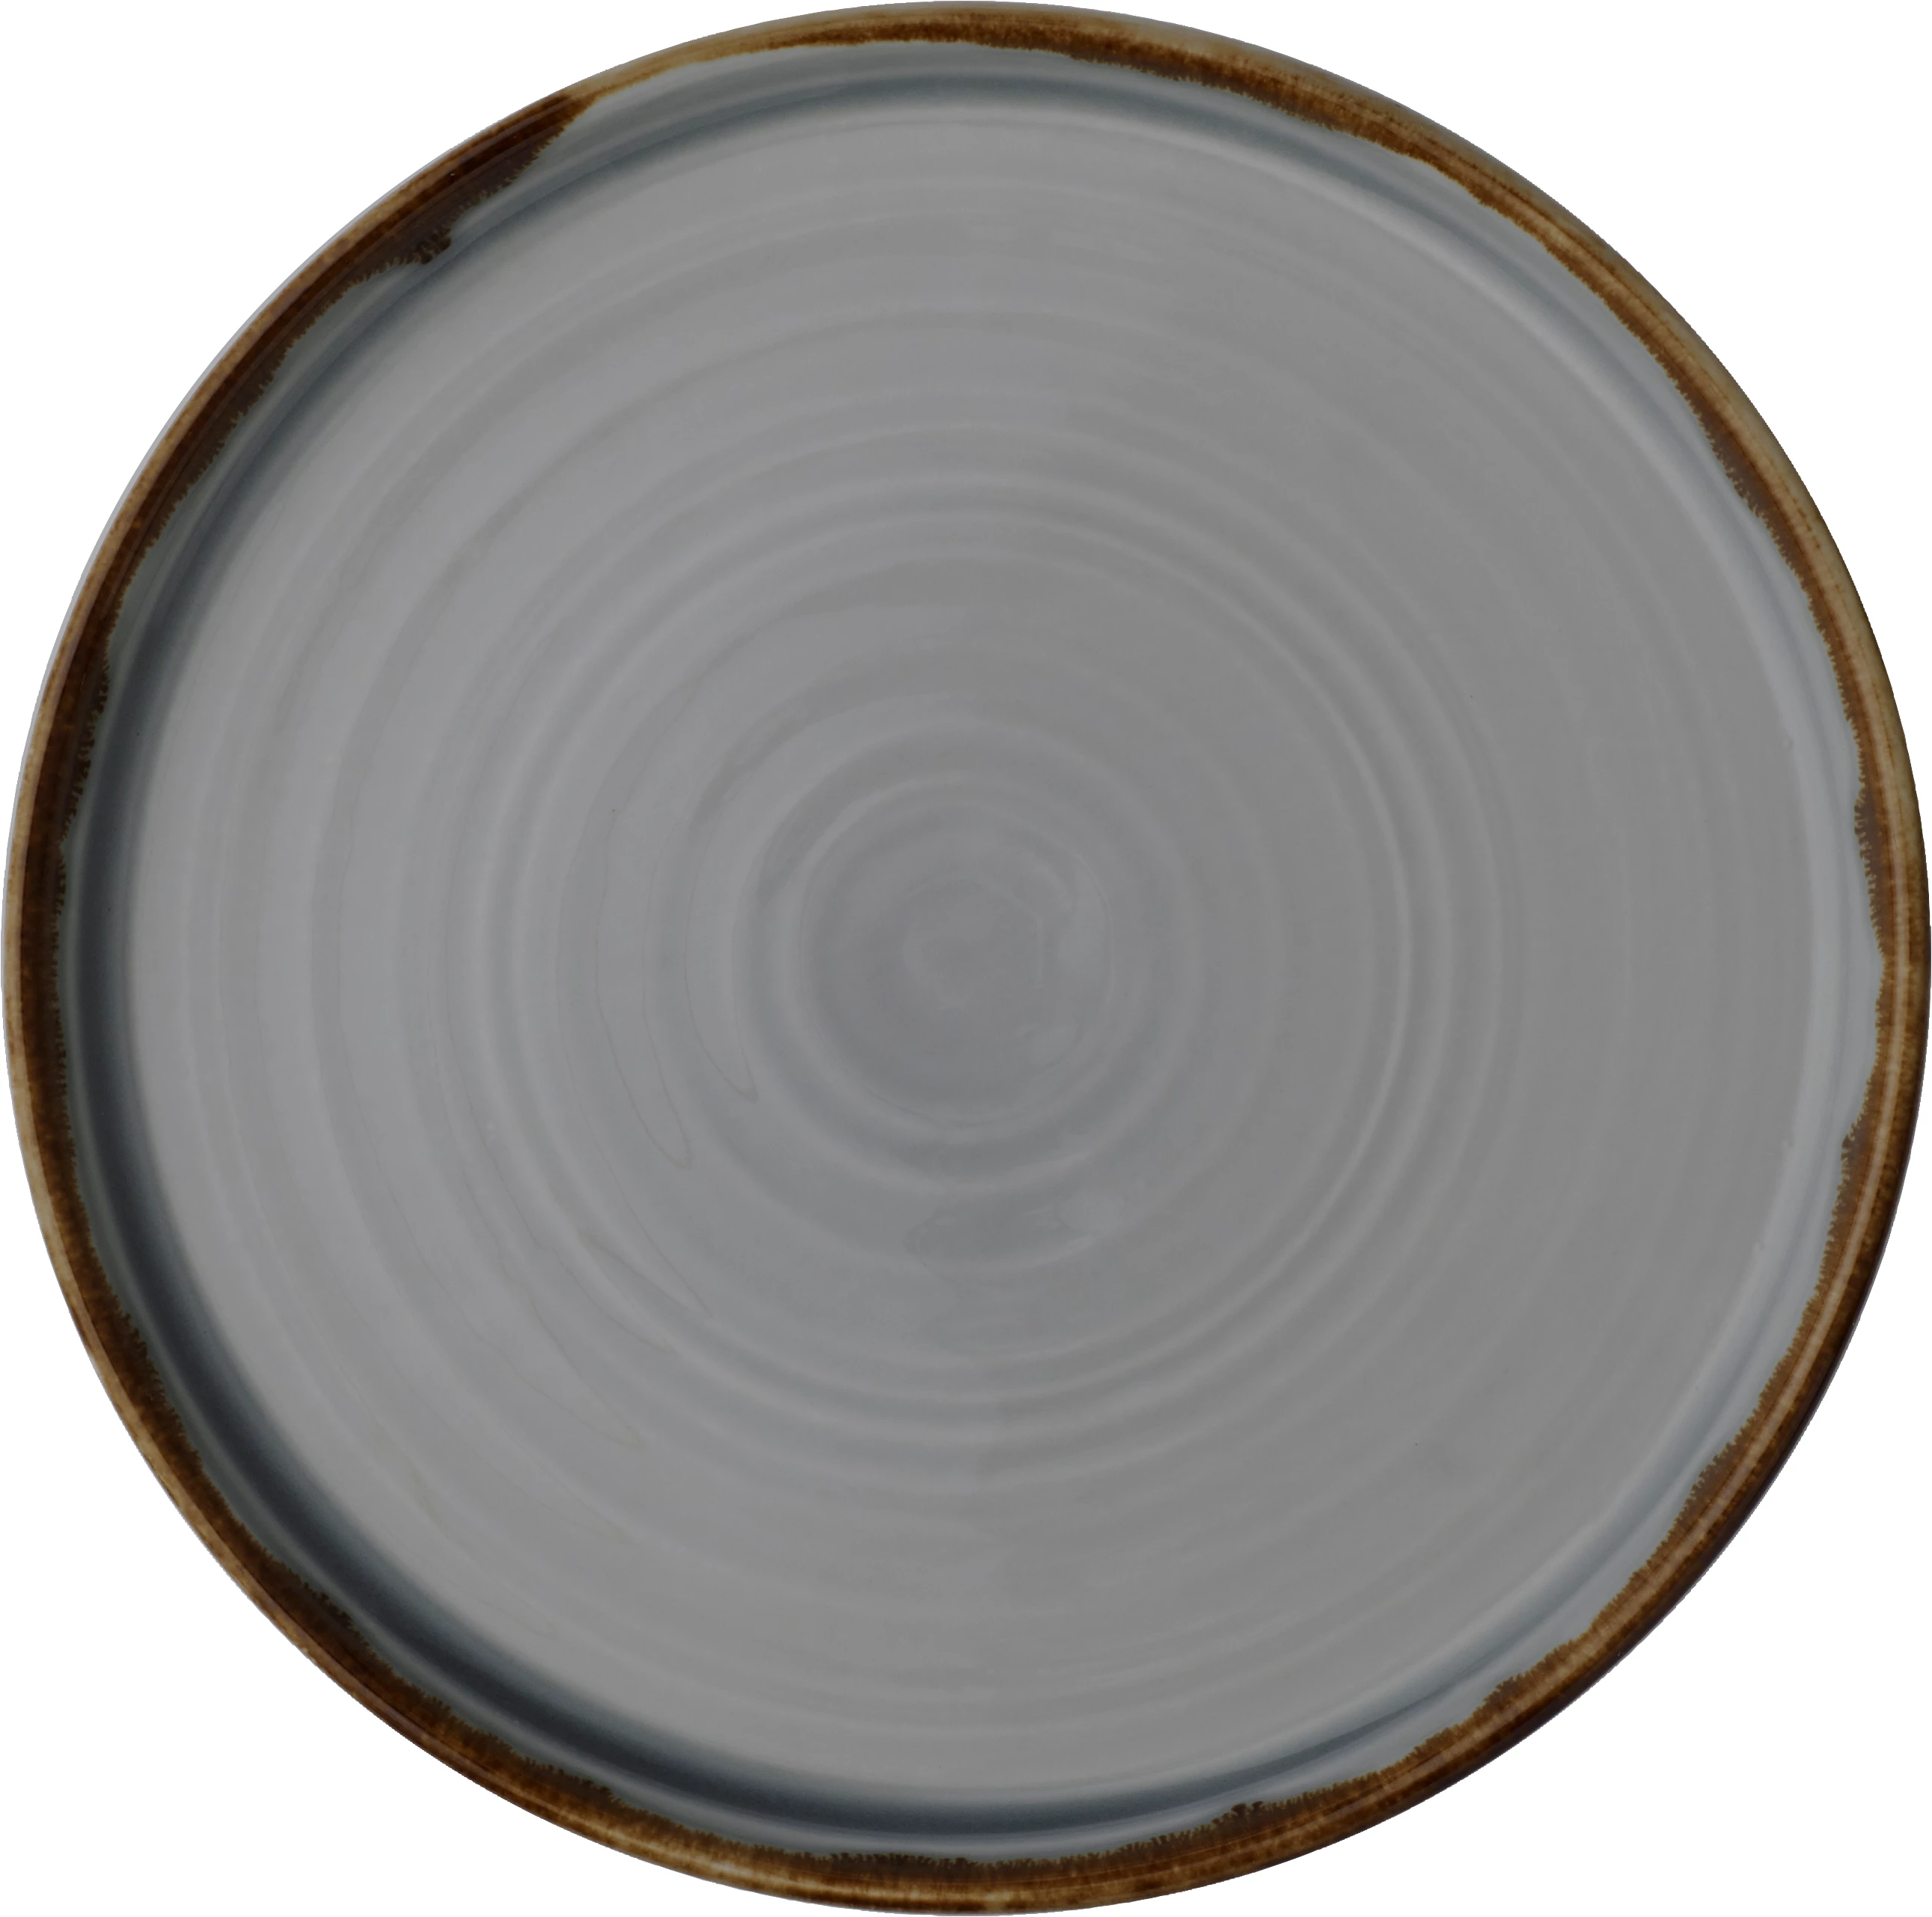 Dudson Harvest tallerken uden fane, flad, grå, ø21 cm